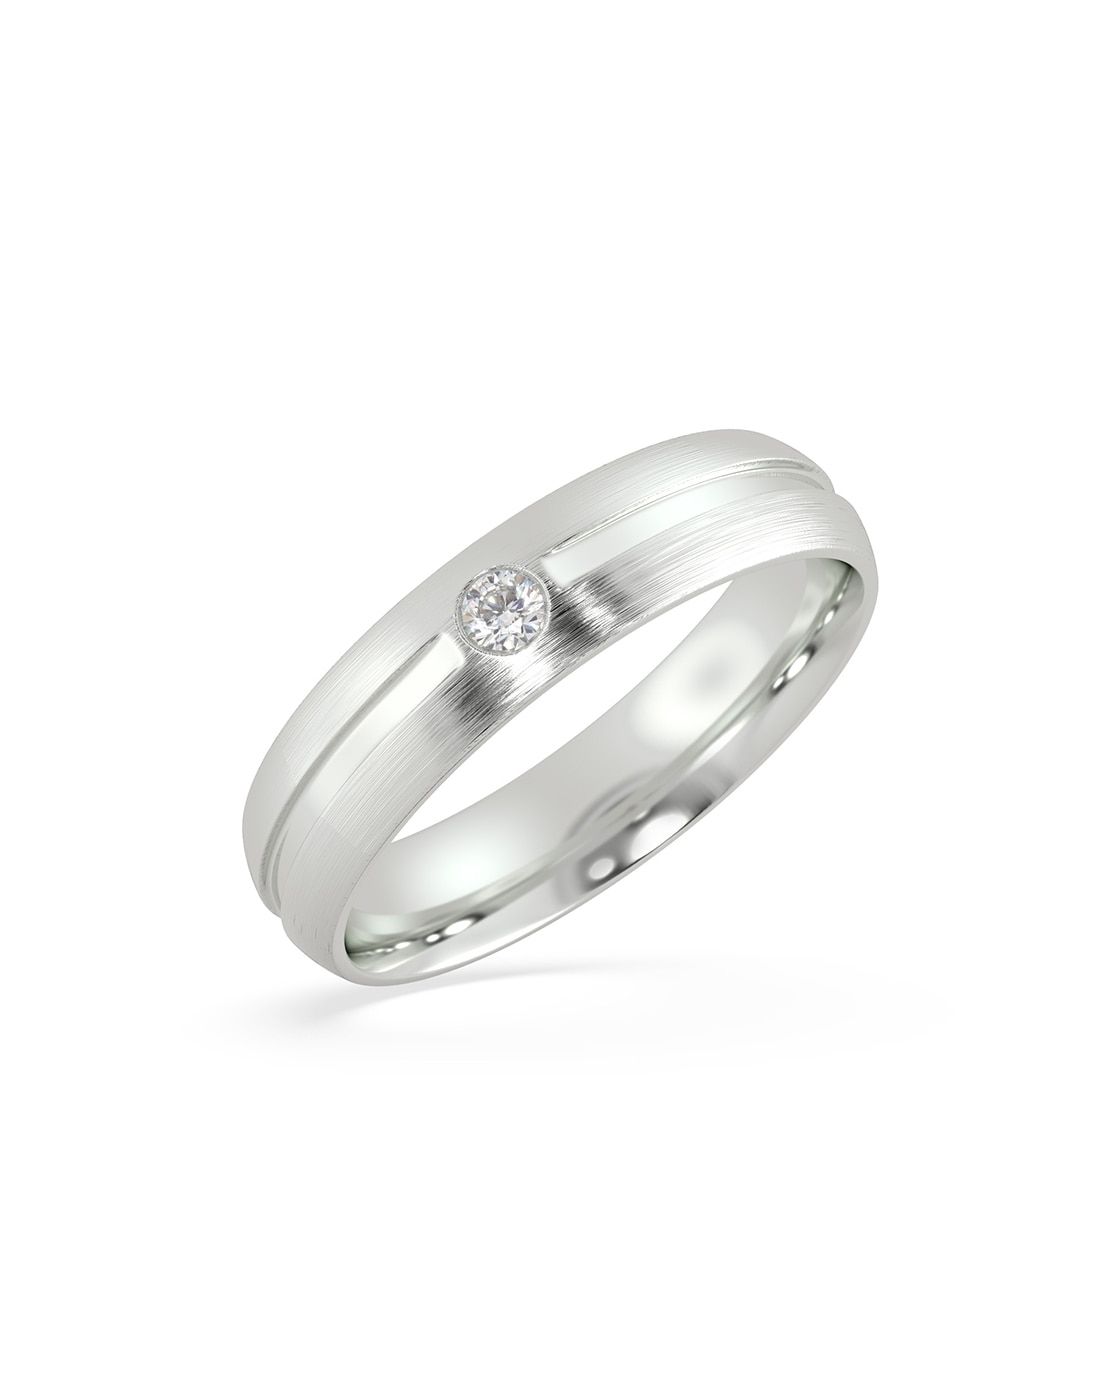 Dexter Platinum Ring For Men | Stylish Rings For Men | CaratLane